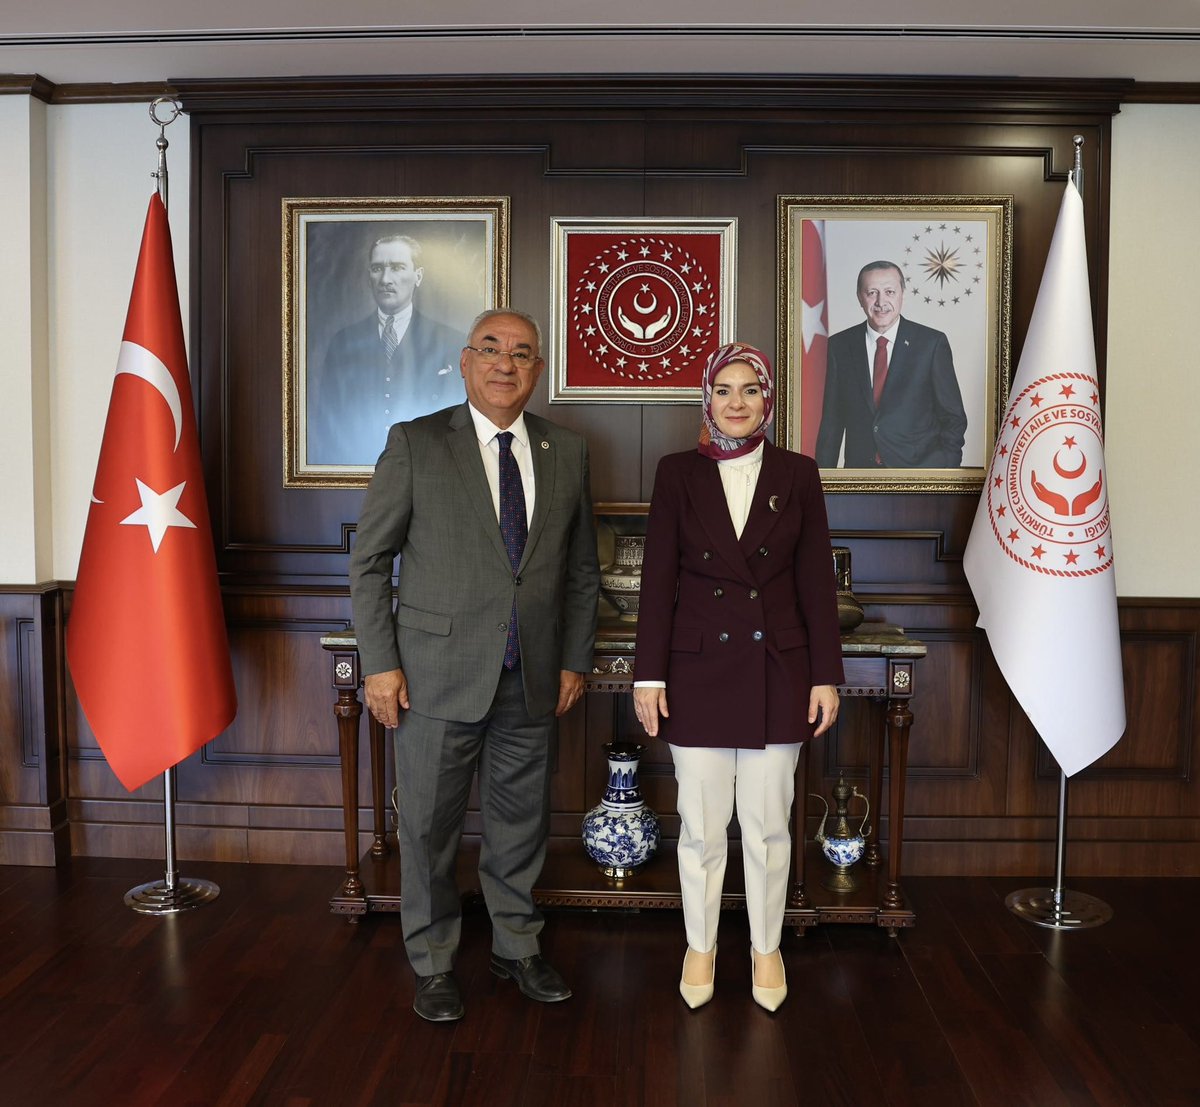 DSP Genel Başkanı Sayın Önder Aksakal'ı Bakanlığımızda misafir ettik. Nazik ziyaretleri için kendilerine teşekkür ediyorum.